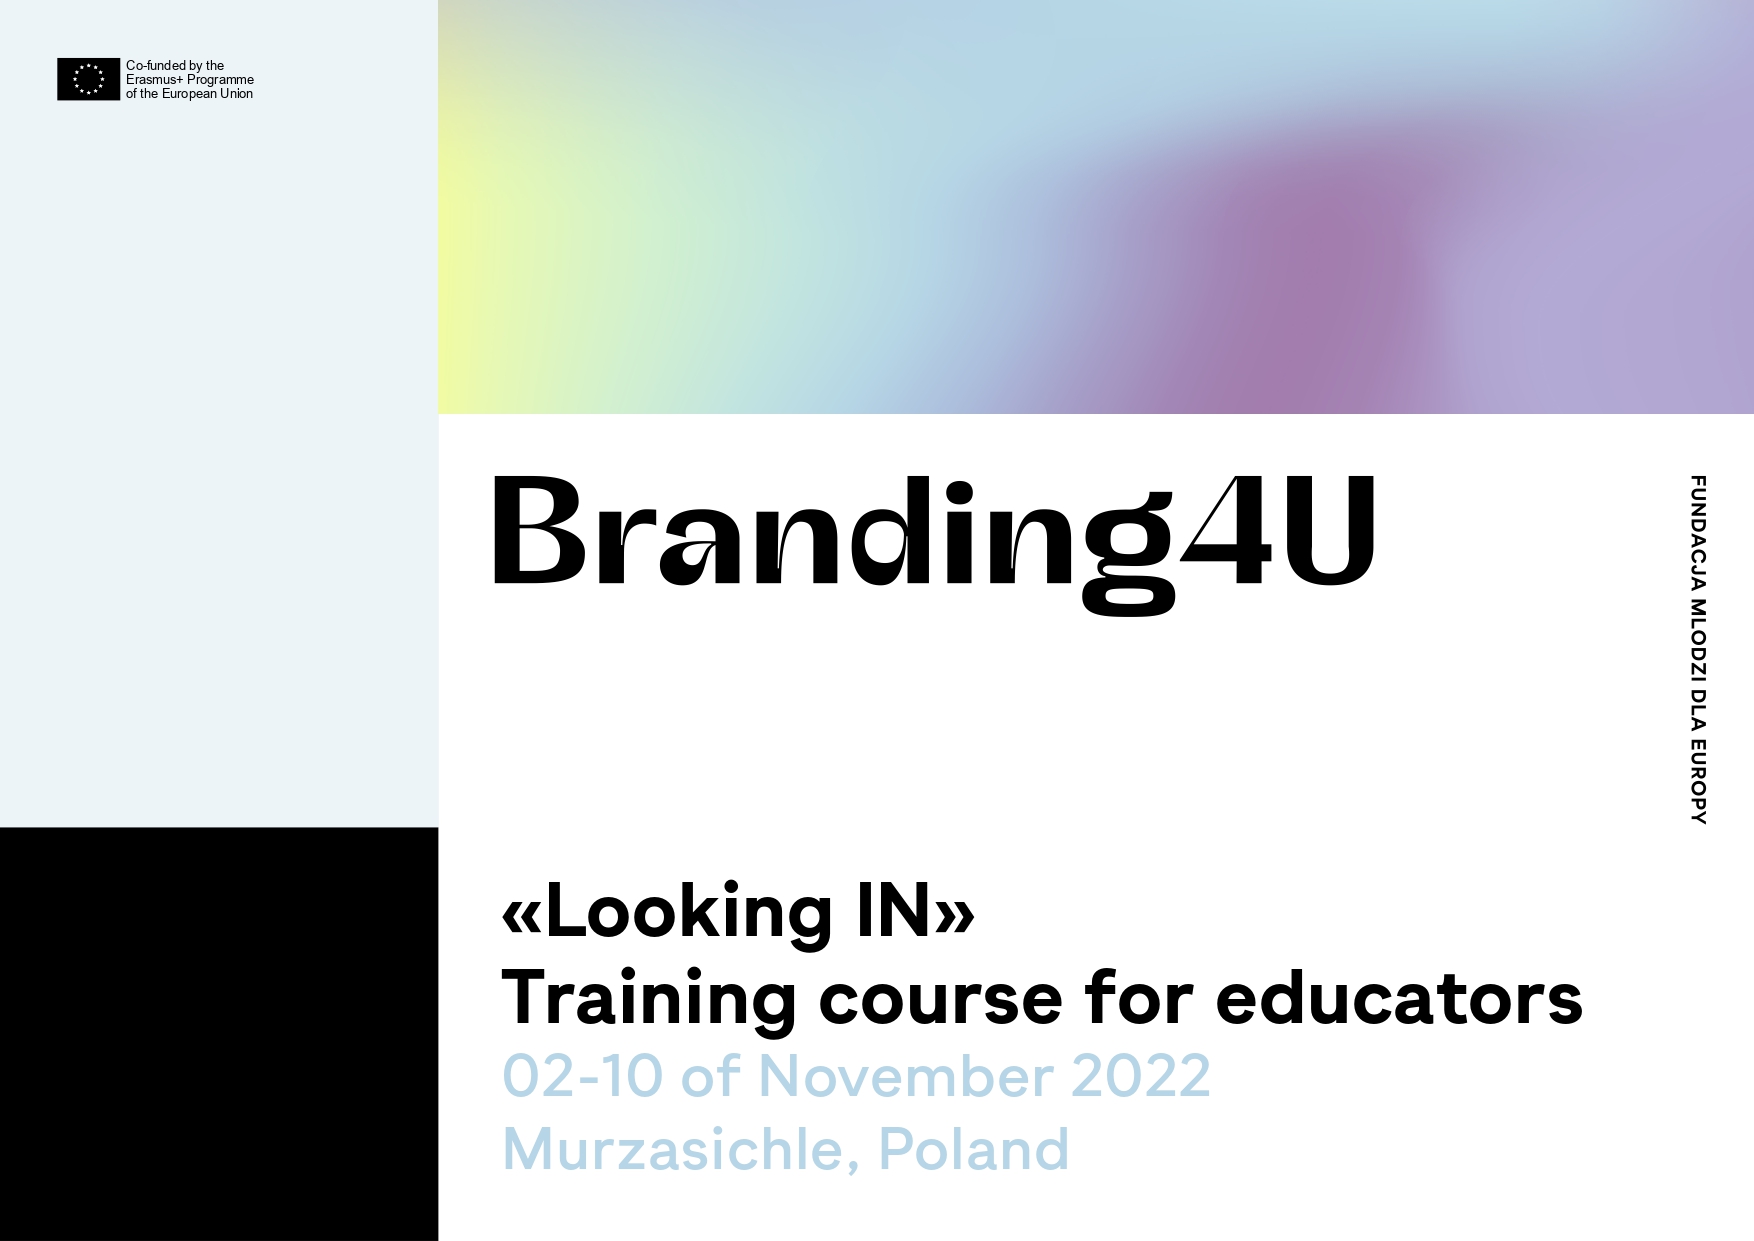 Corso di formazione "Branding4u" a Murzasichle, Polonia, dal 2 al 10 novembre 2022.